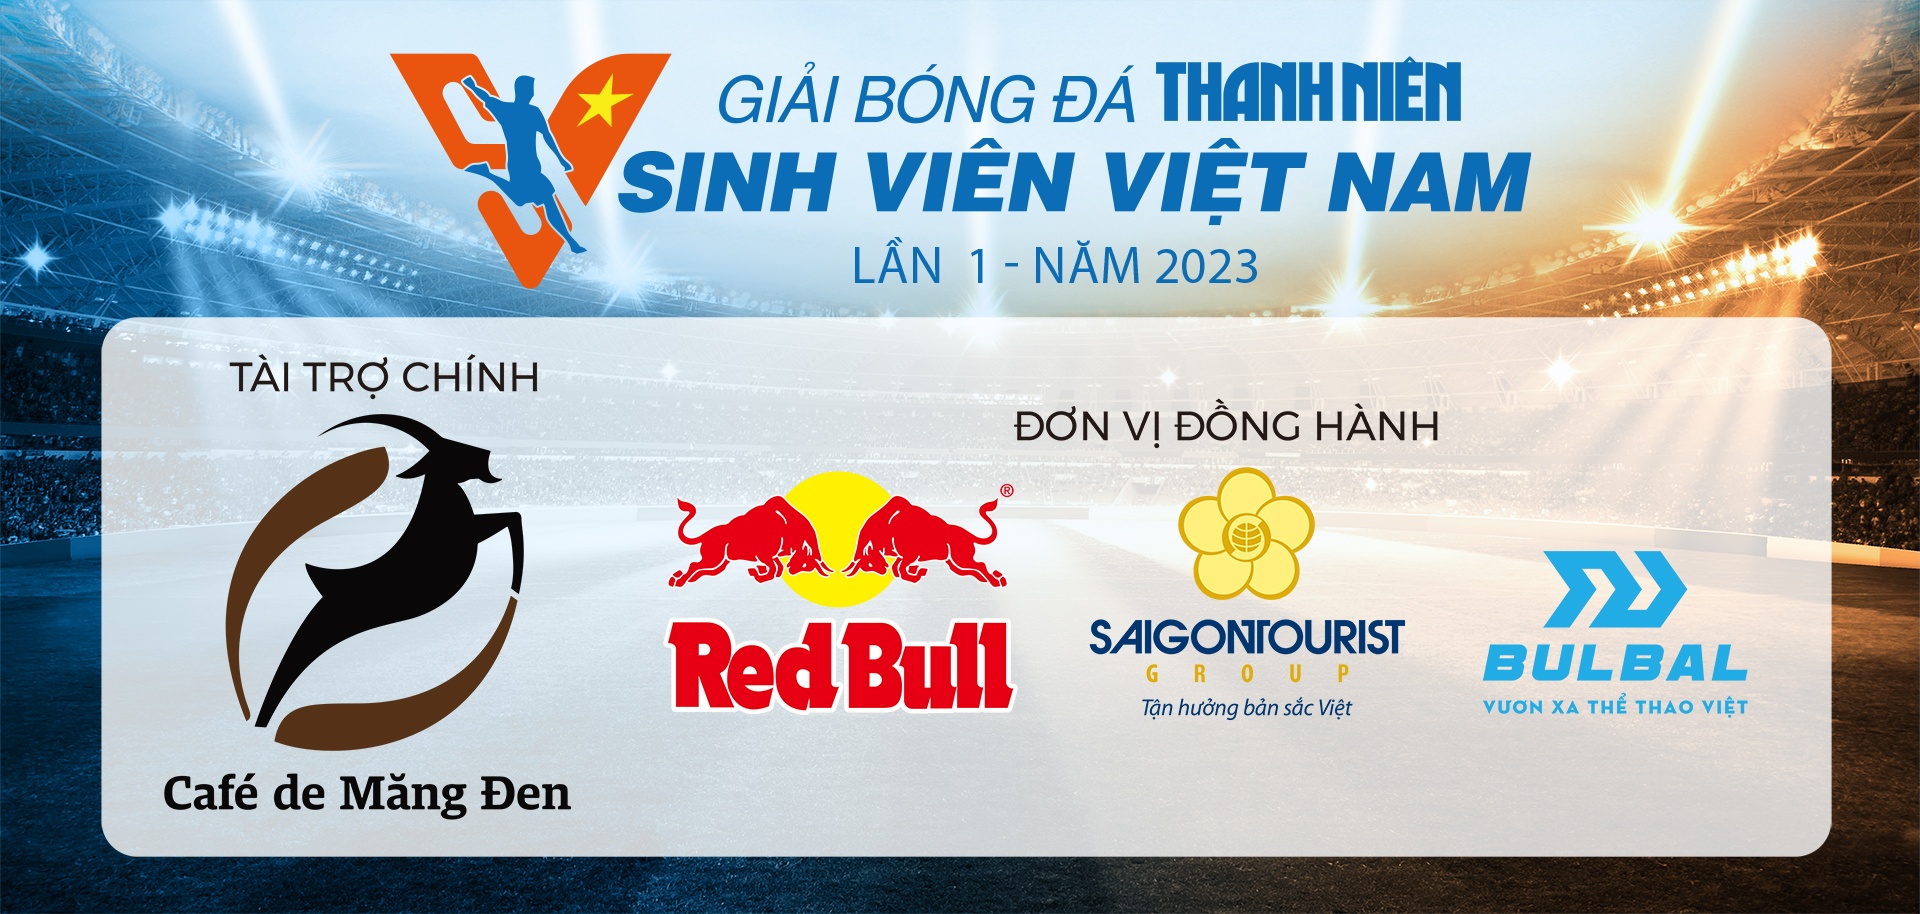 Cần Thơ sẽ tổ chức tốt vòng loại bóng đá Thanh Niên Sinh viên Việt Nam 2023 - ảnh 7